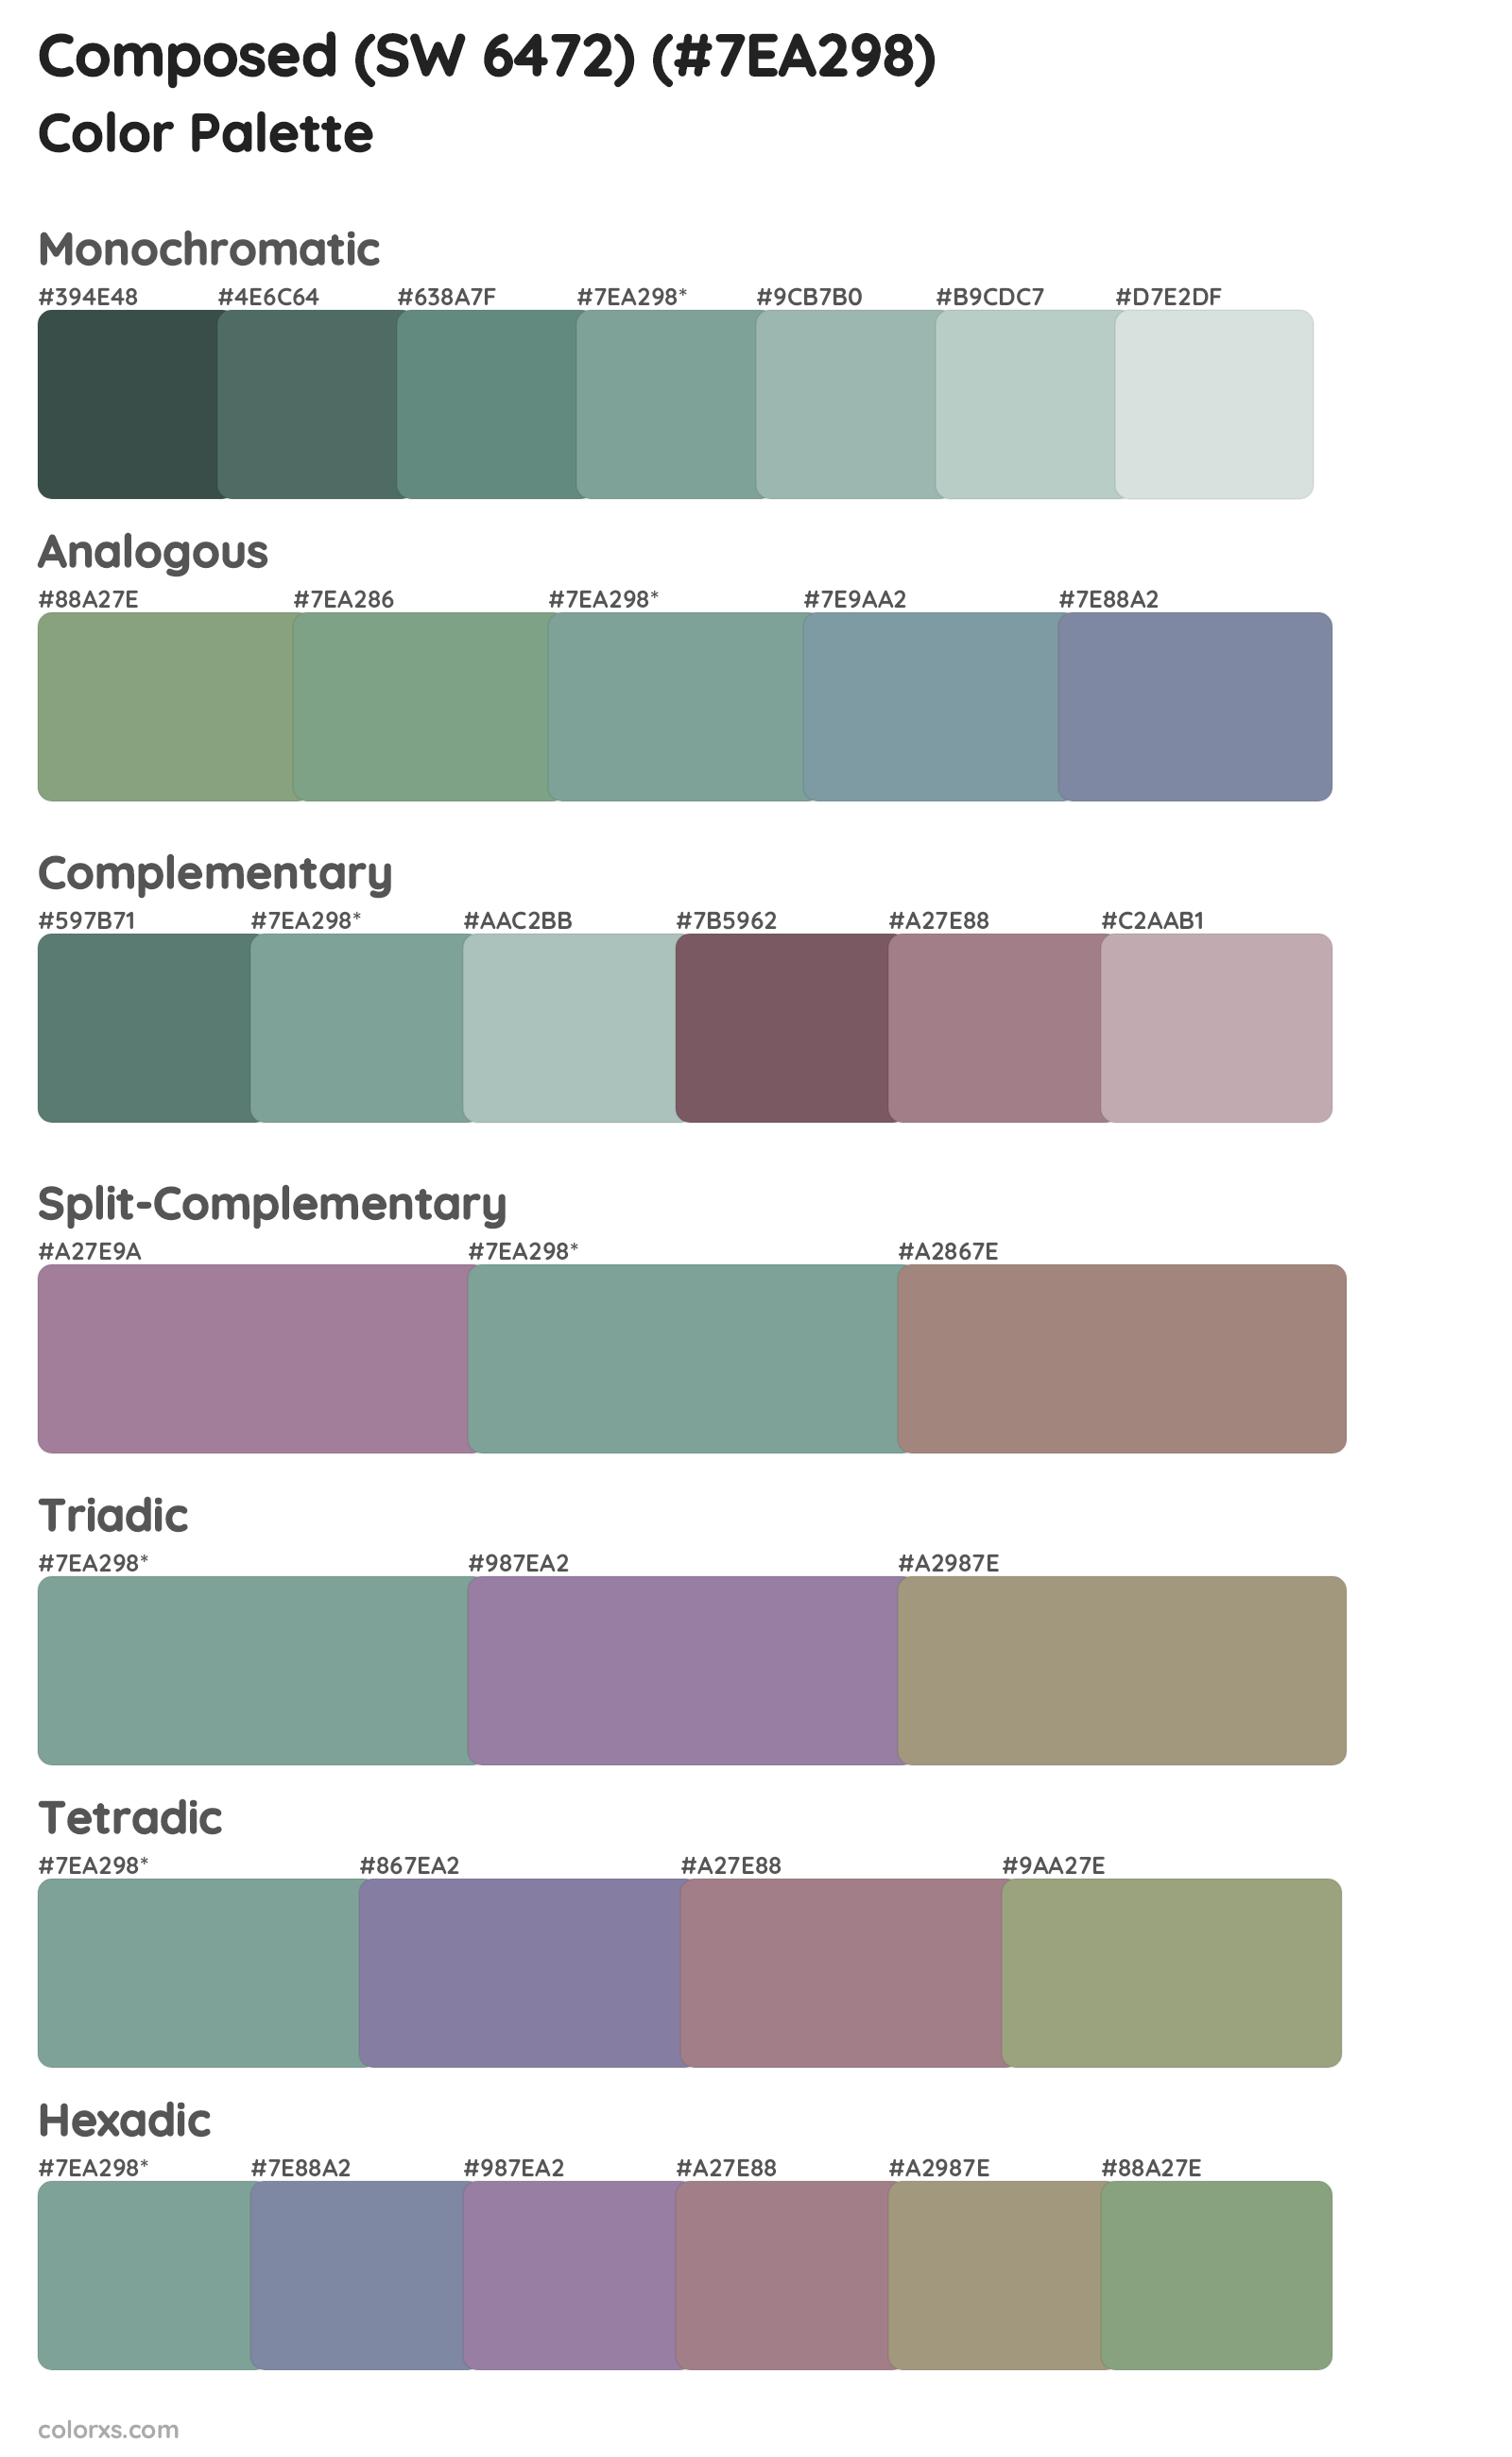 Composed (SW 6472) Color Scheme Palettes